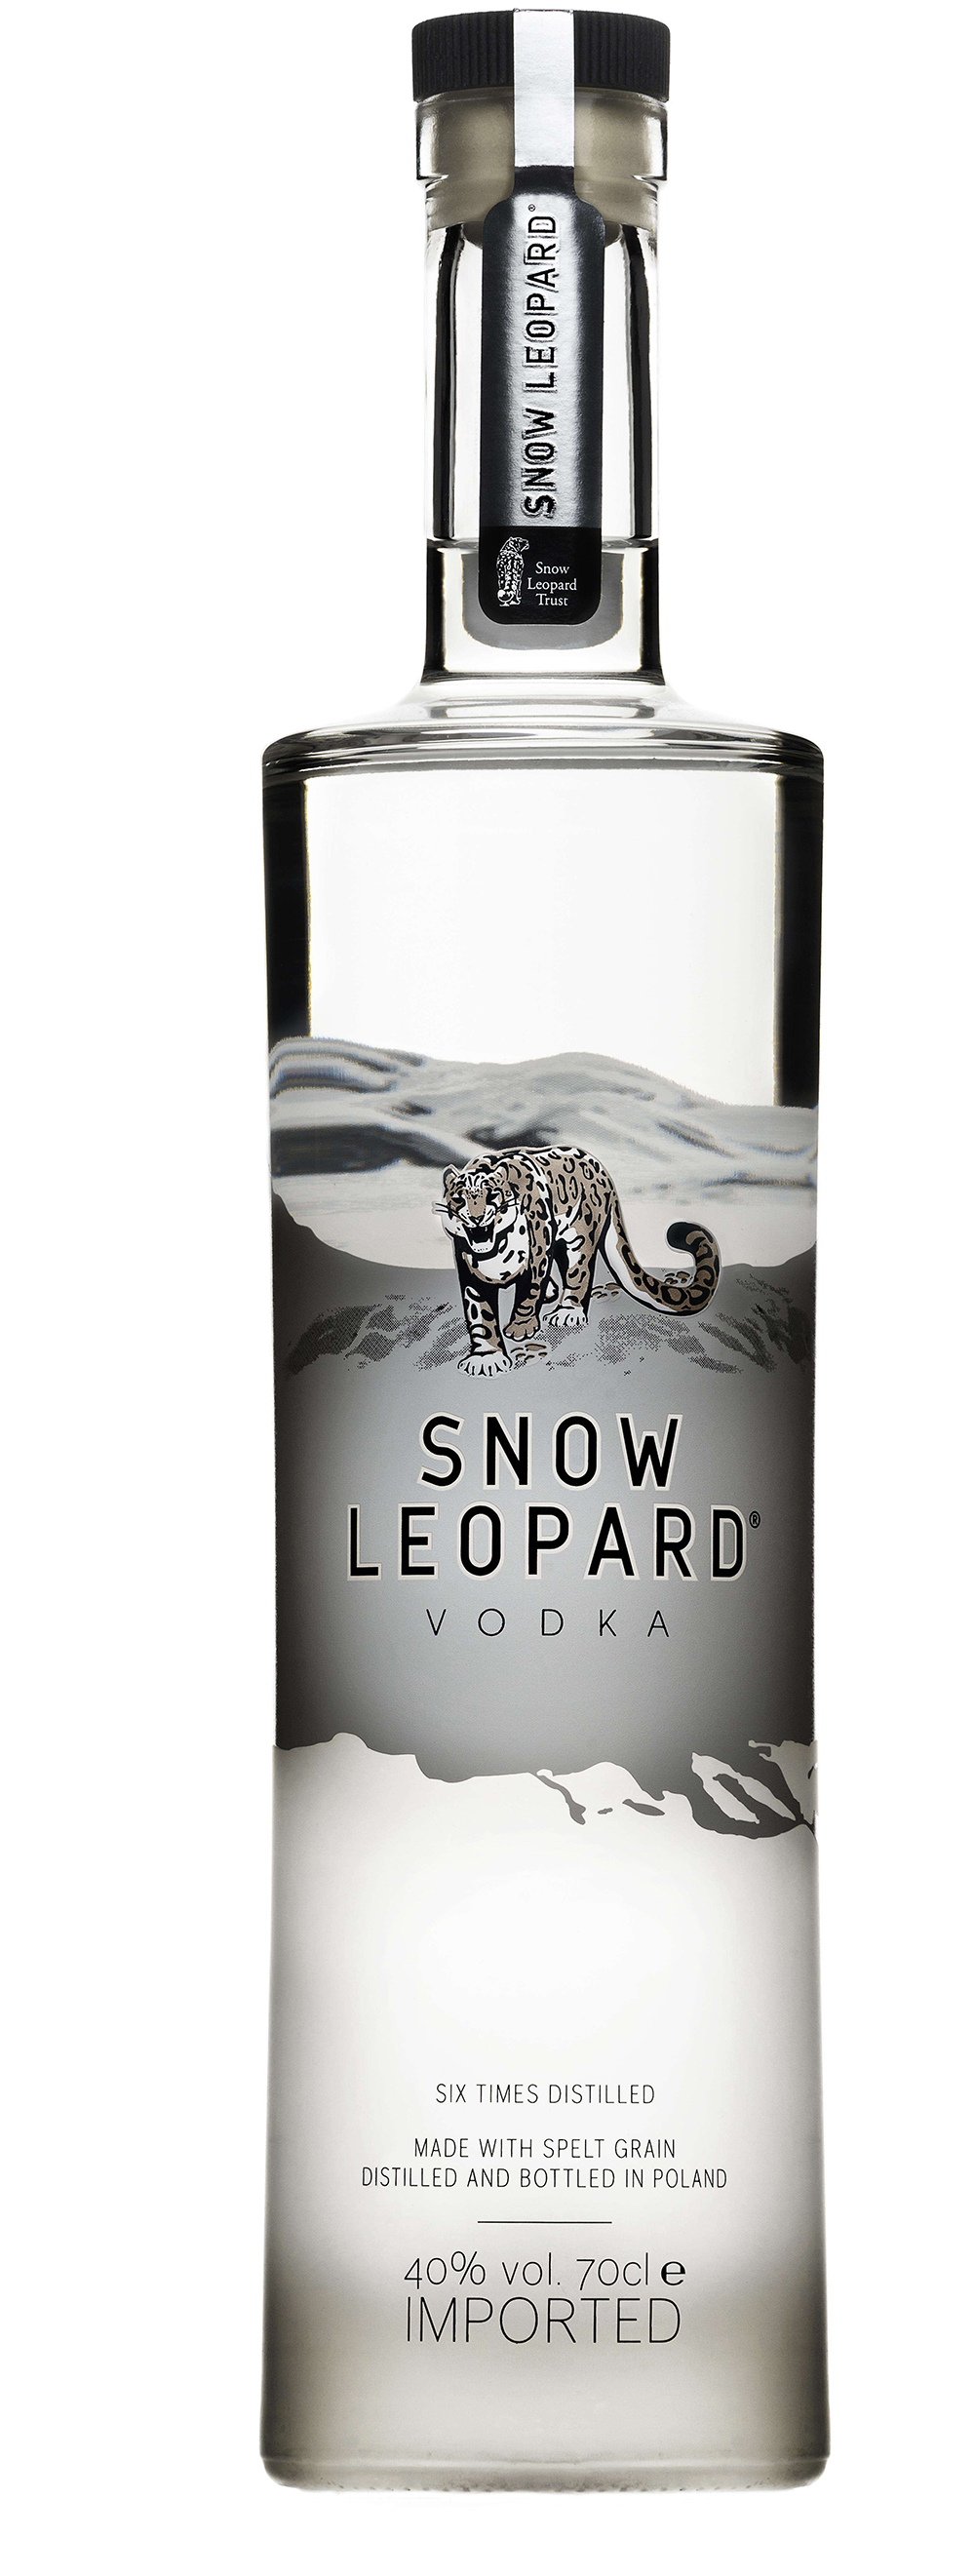 snow-leopard-vodka-image